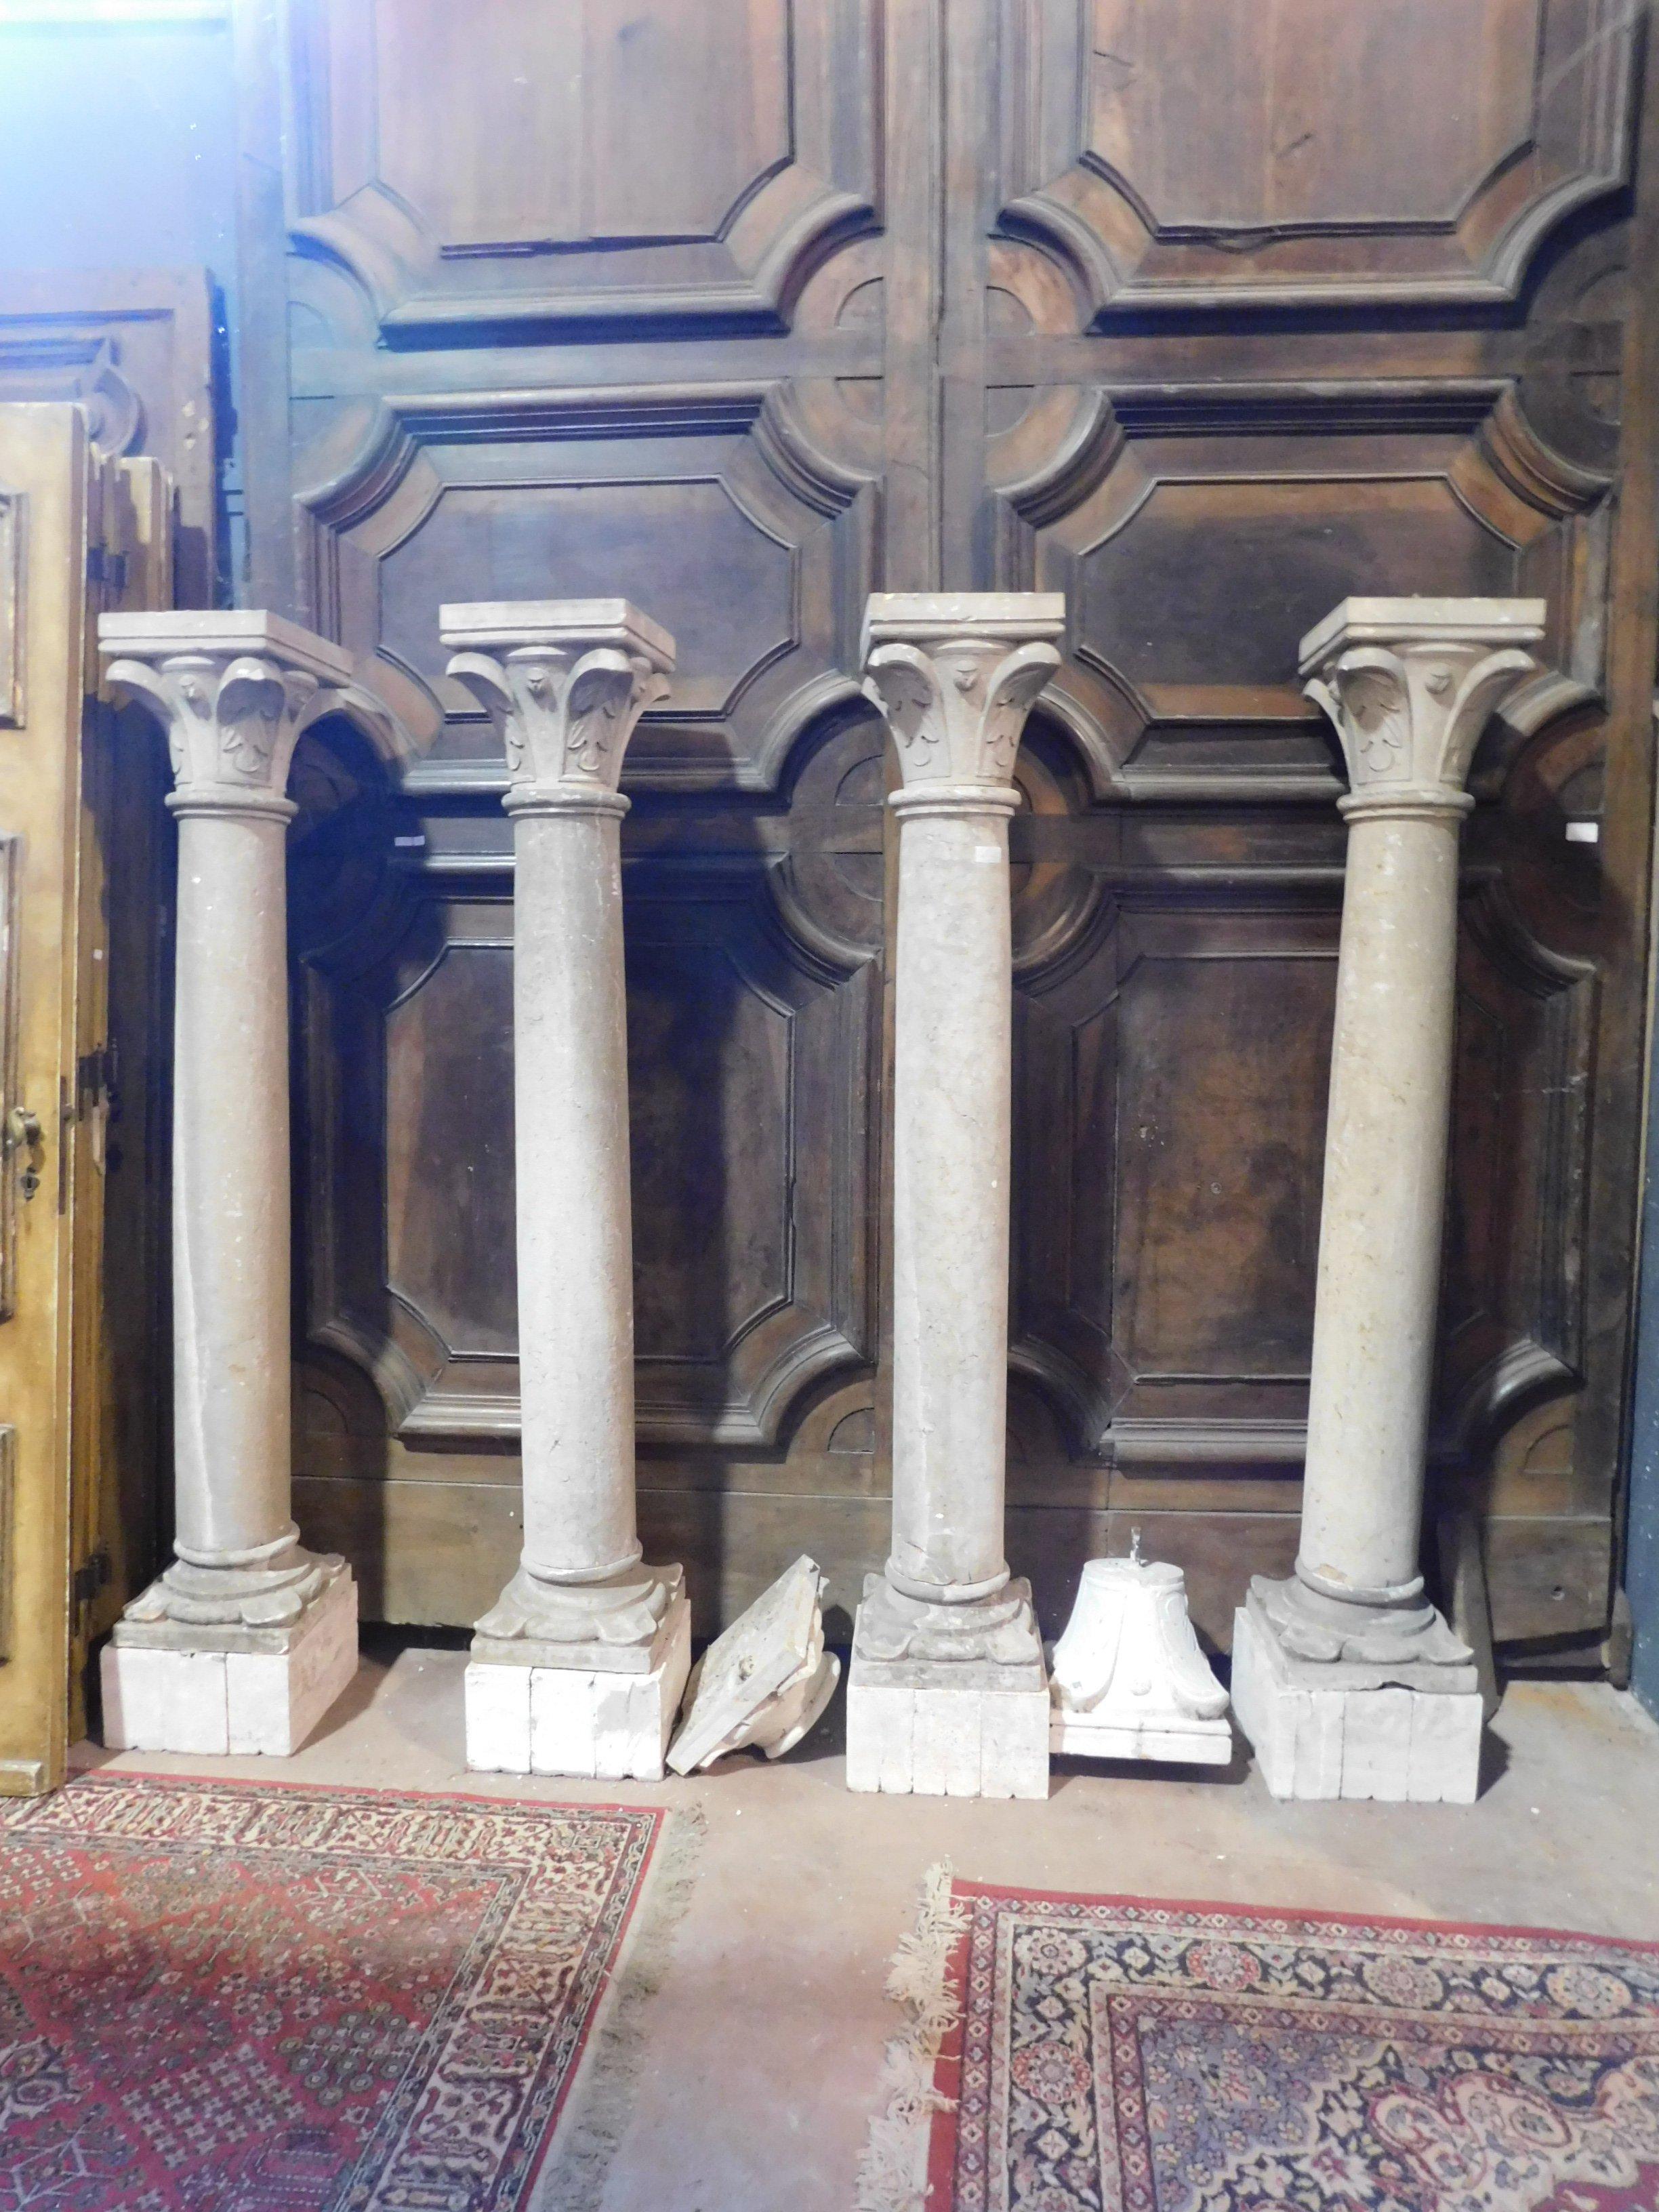 N. 4 antike Säulen aus Botticino-Stein (typischer italienischer Edelstein), mit gemeißelten Basen und Kapitellen, weißer Teil nicht inbegriffen, nur zu Ausstellungszwecken, vollständig handgefertigt in der zweiten Hälfte des 18. Jahrhunderts,